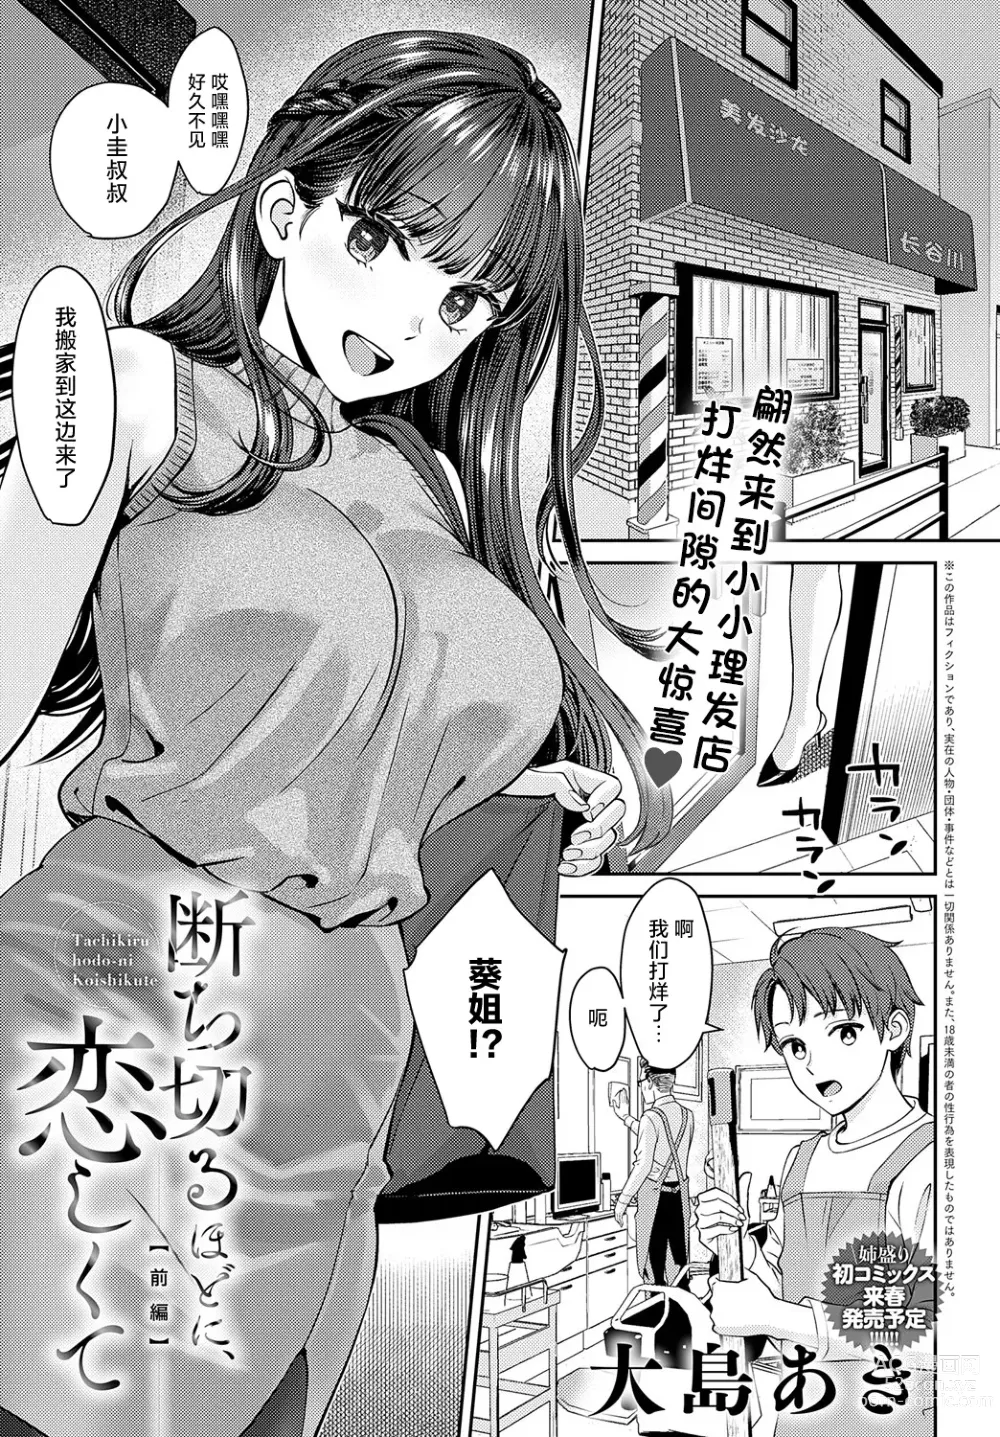 Page 1 of manga Tachikiru hodo ni,  Koishikute